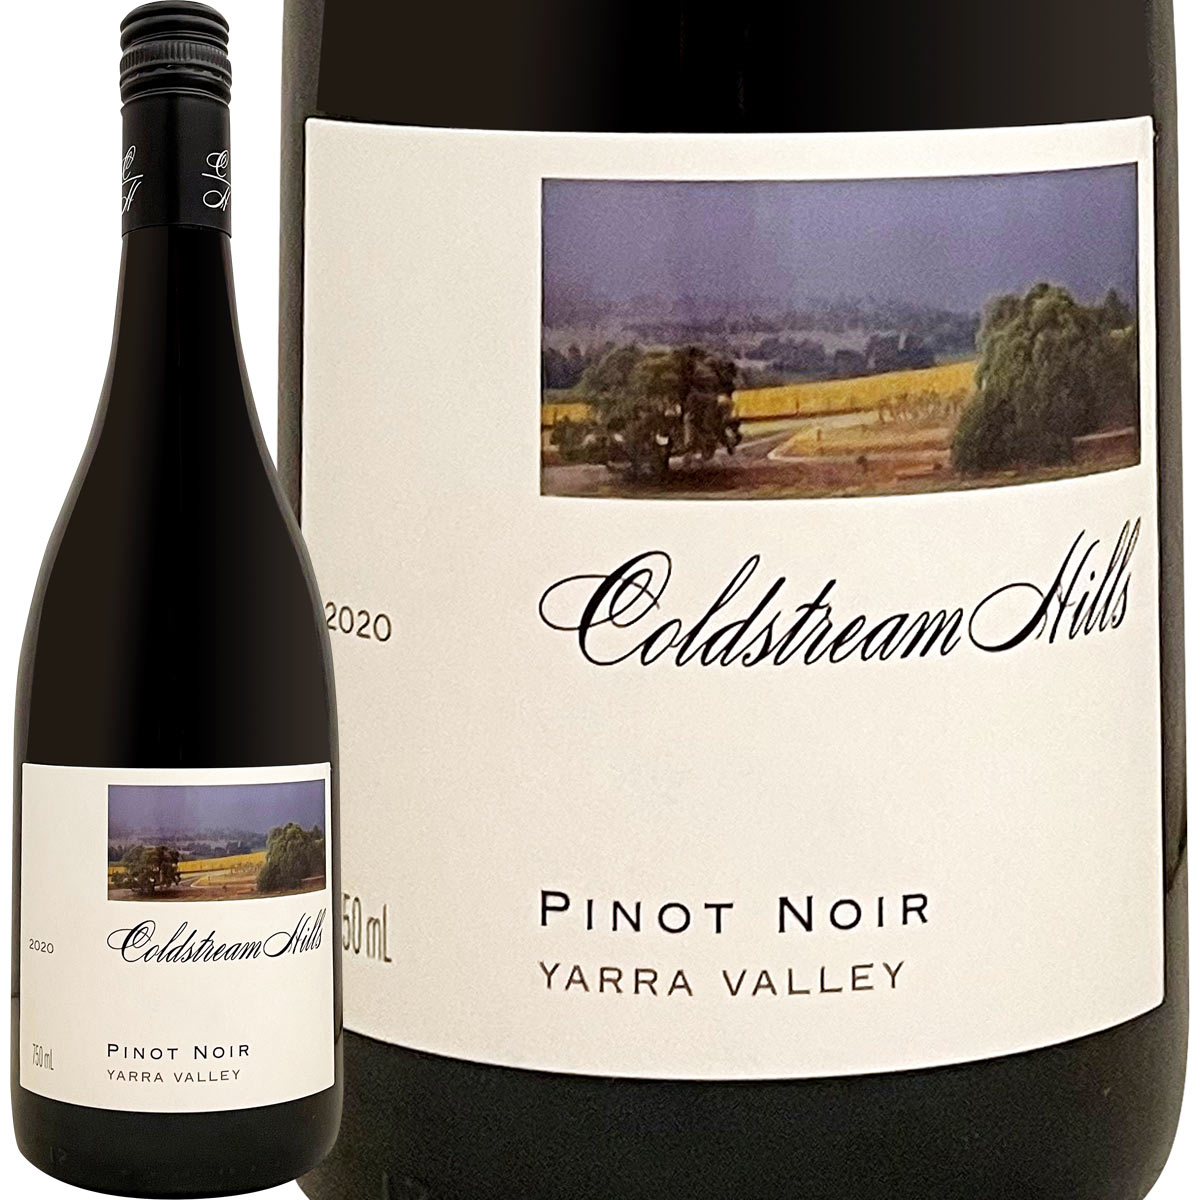 コールドストリーム・ヒルズ・ヤラ・ヴァレー・ピノ・ノワール 2020<br><br>【オーストラリア】【赤ワイン】【750ml】【ジェームズ・ハリデー】【辛口】【ロマネ・コンティ】【Coldstream  Hills】 赤ワイン 京橋ワイン